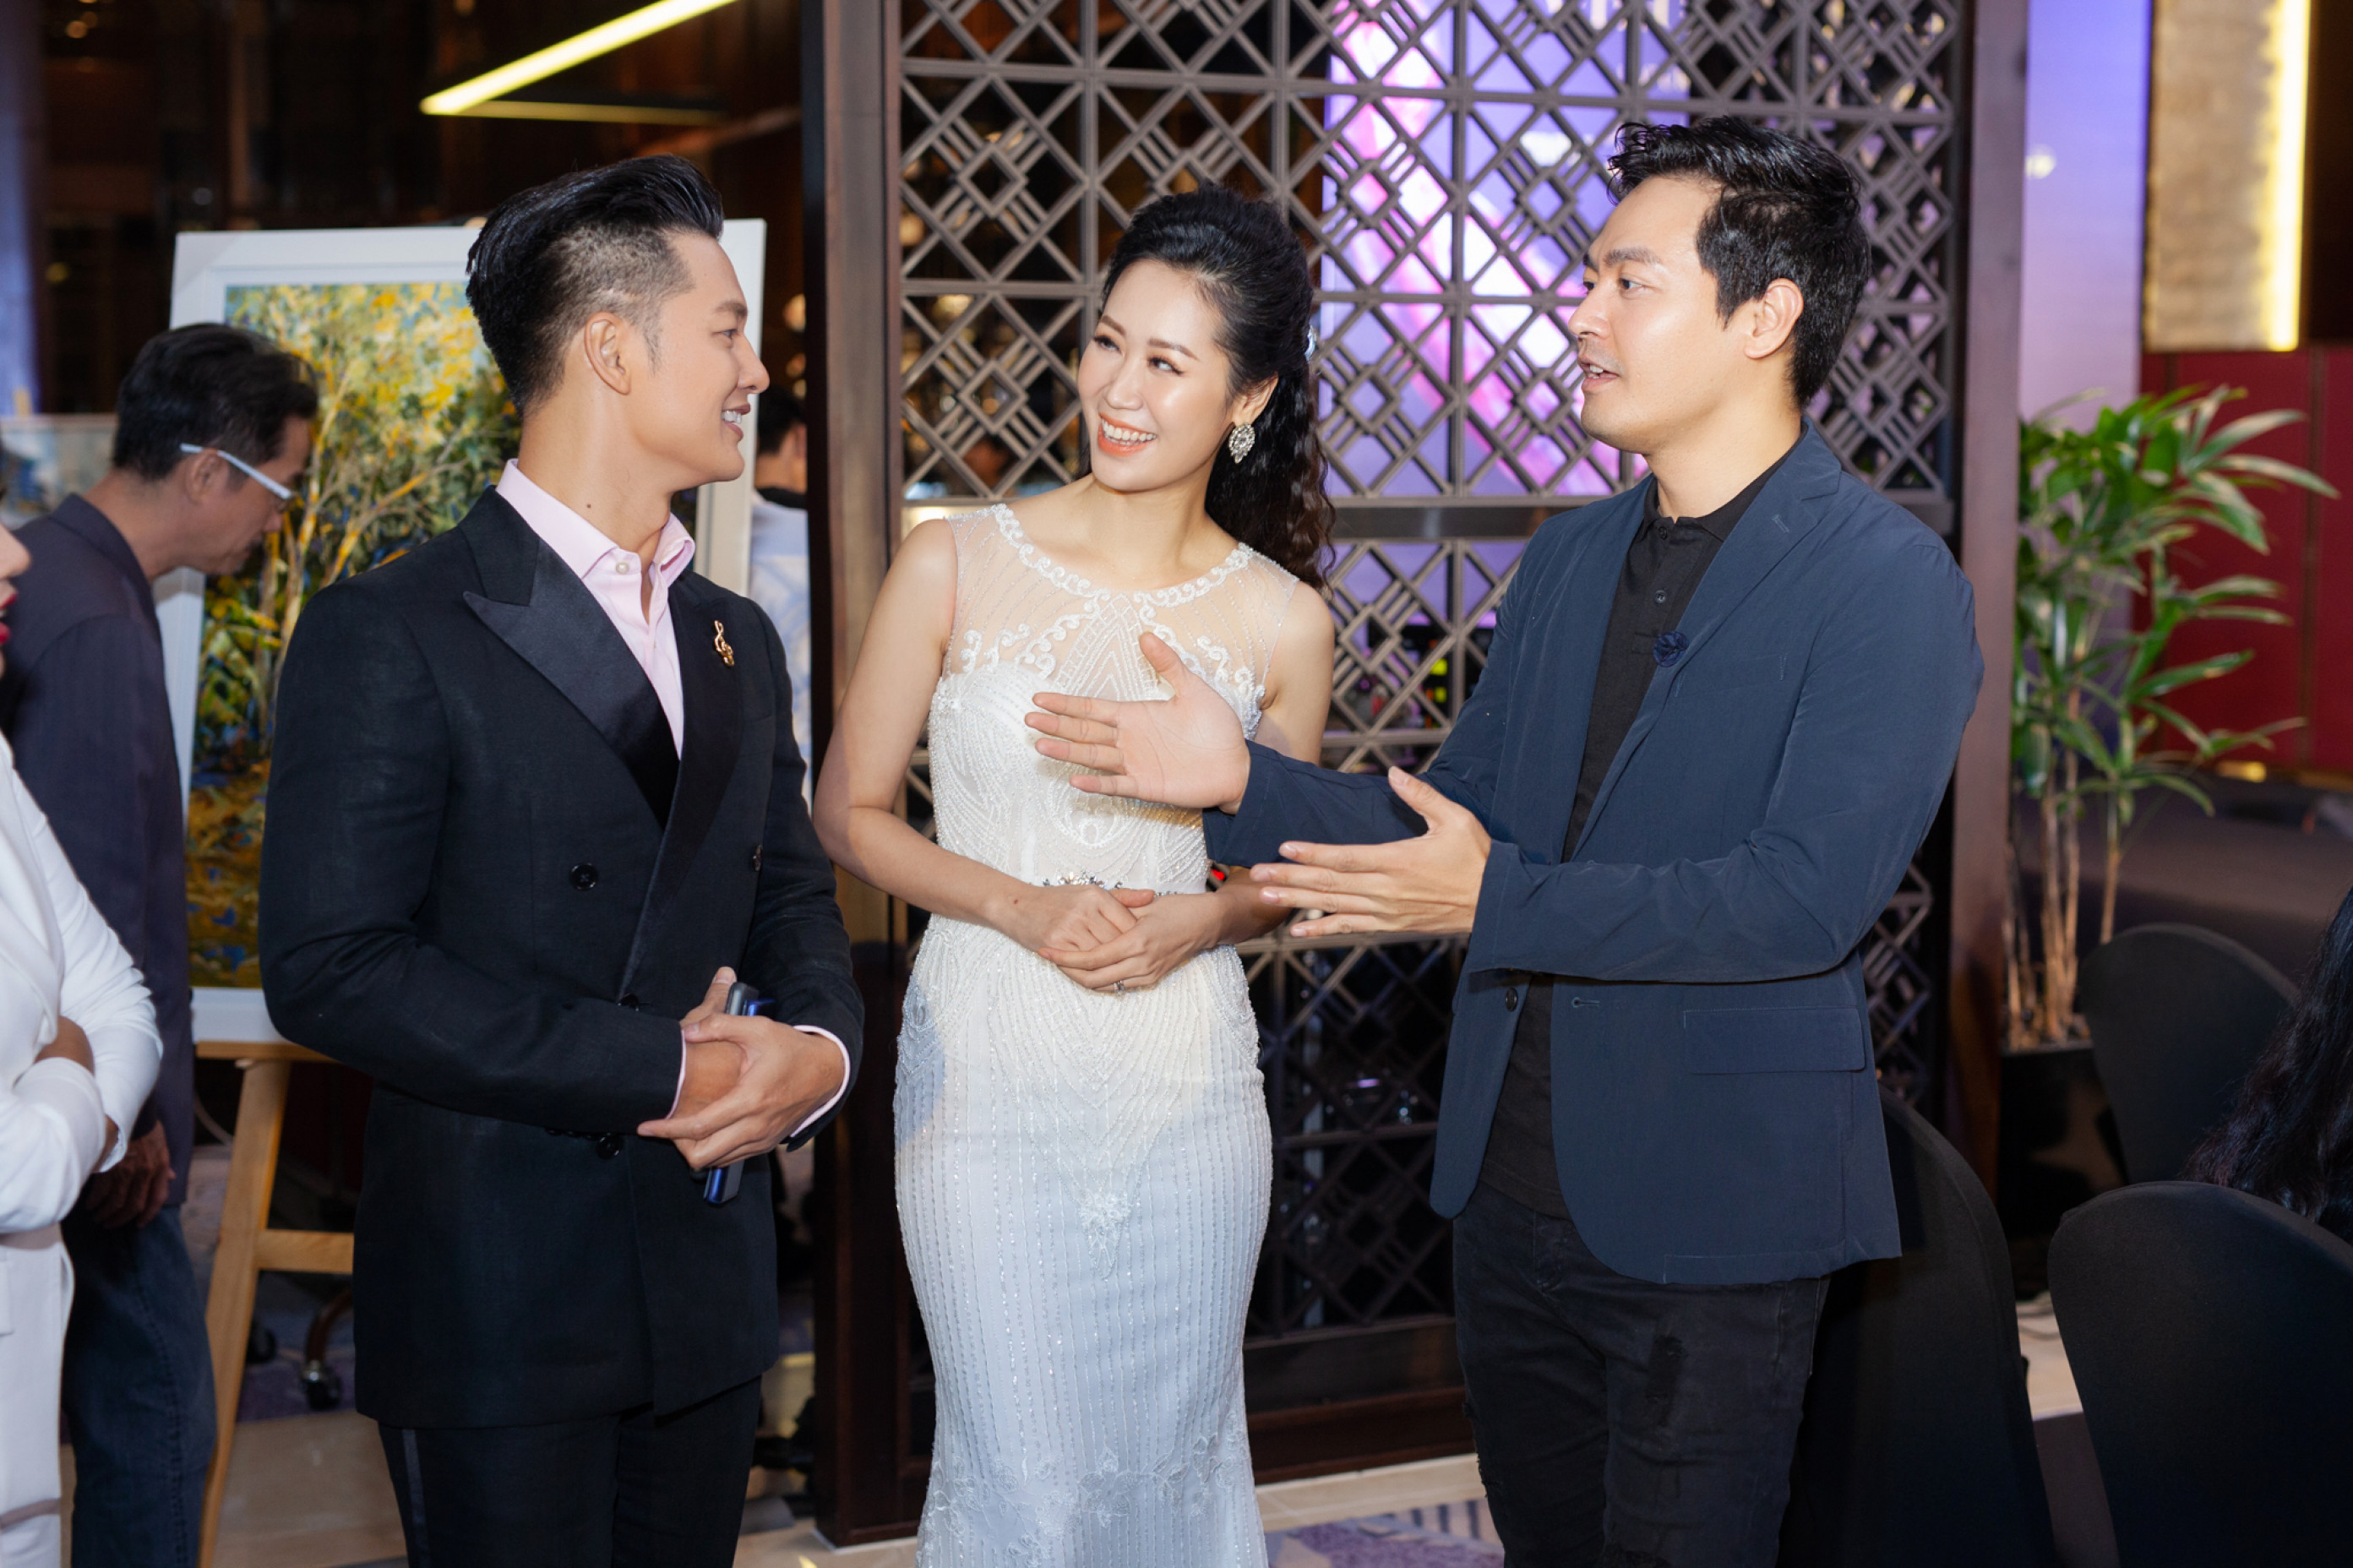 Trong chương trình, Dương Thùy Linh gặp lại người bạn thân lâu năm, MC Phan Anh. Cả hai vốn làm chung MC, biên tập viên trong cùng đài truyền hình từ nhiều năm trước nên có mối quan hệ rất gần gũi ở ngoài cuộc sống. 

